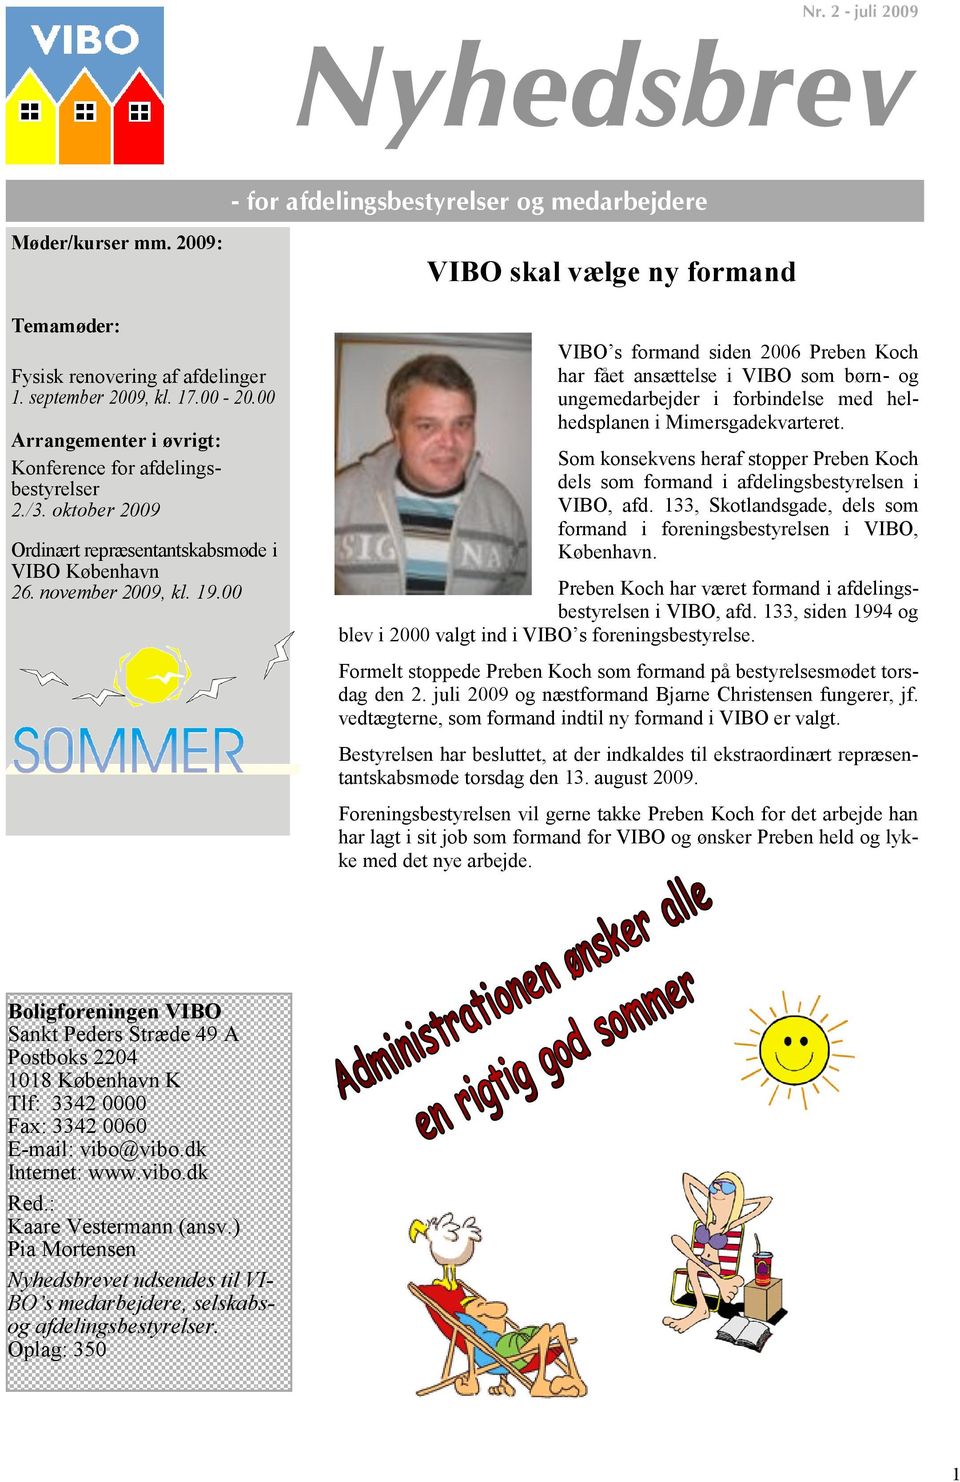 00 VIBO skal vælge ny formand VIBO s formand siden 2006 Preben Koch har fået ansættelse i VIBO som børn- og ungemedarbejder i forbindelse med helhedsplanen i Mimersgadekvarteret.